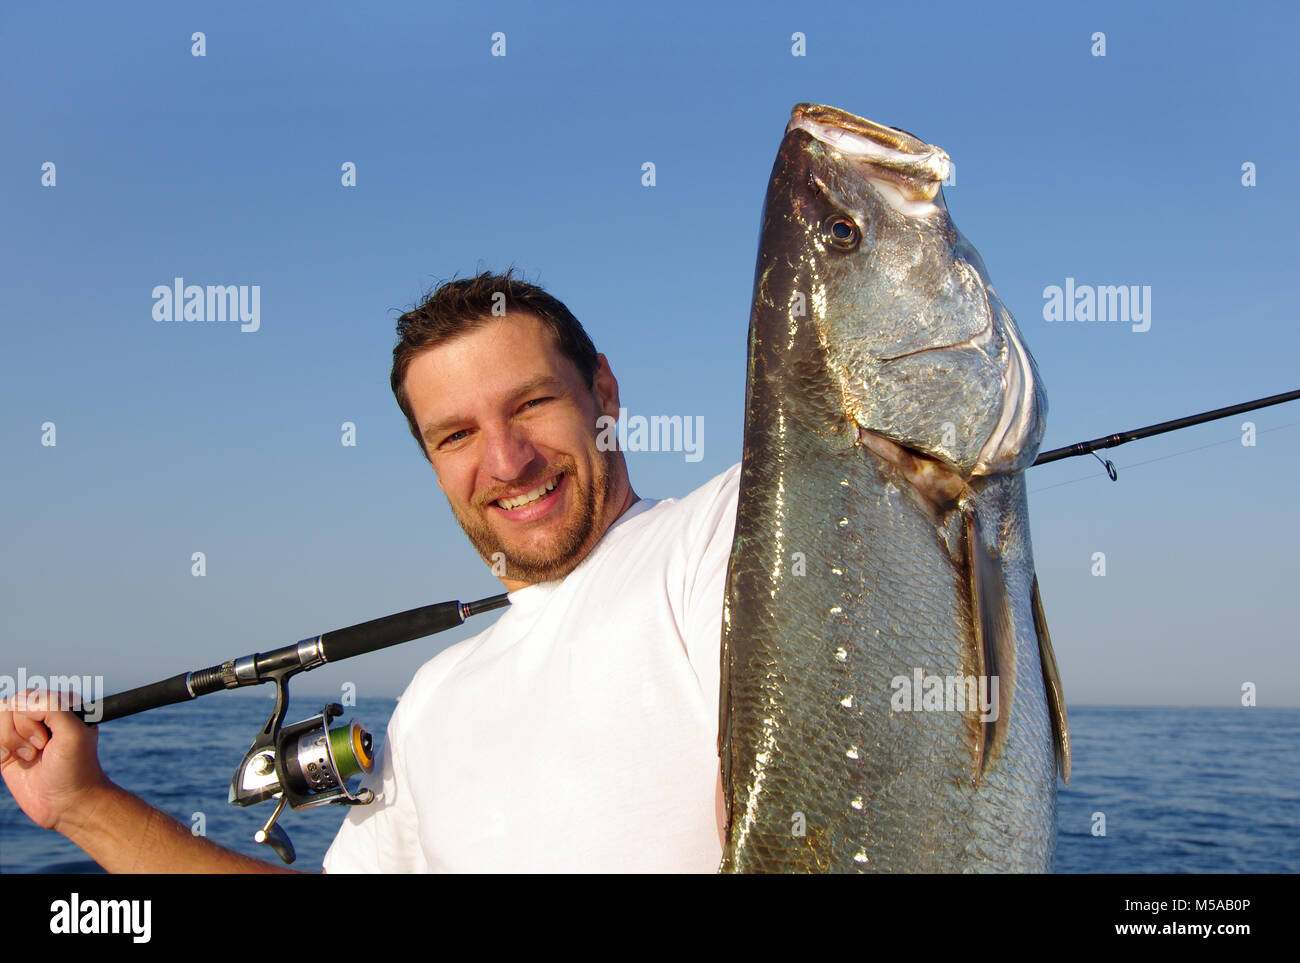 Heureux pêcheur tenant un grand poisson d'eau salée Banque D'Images